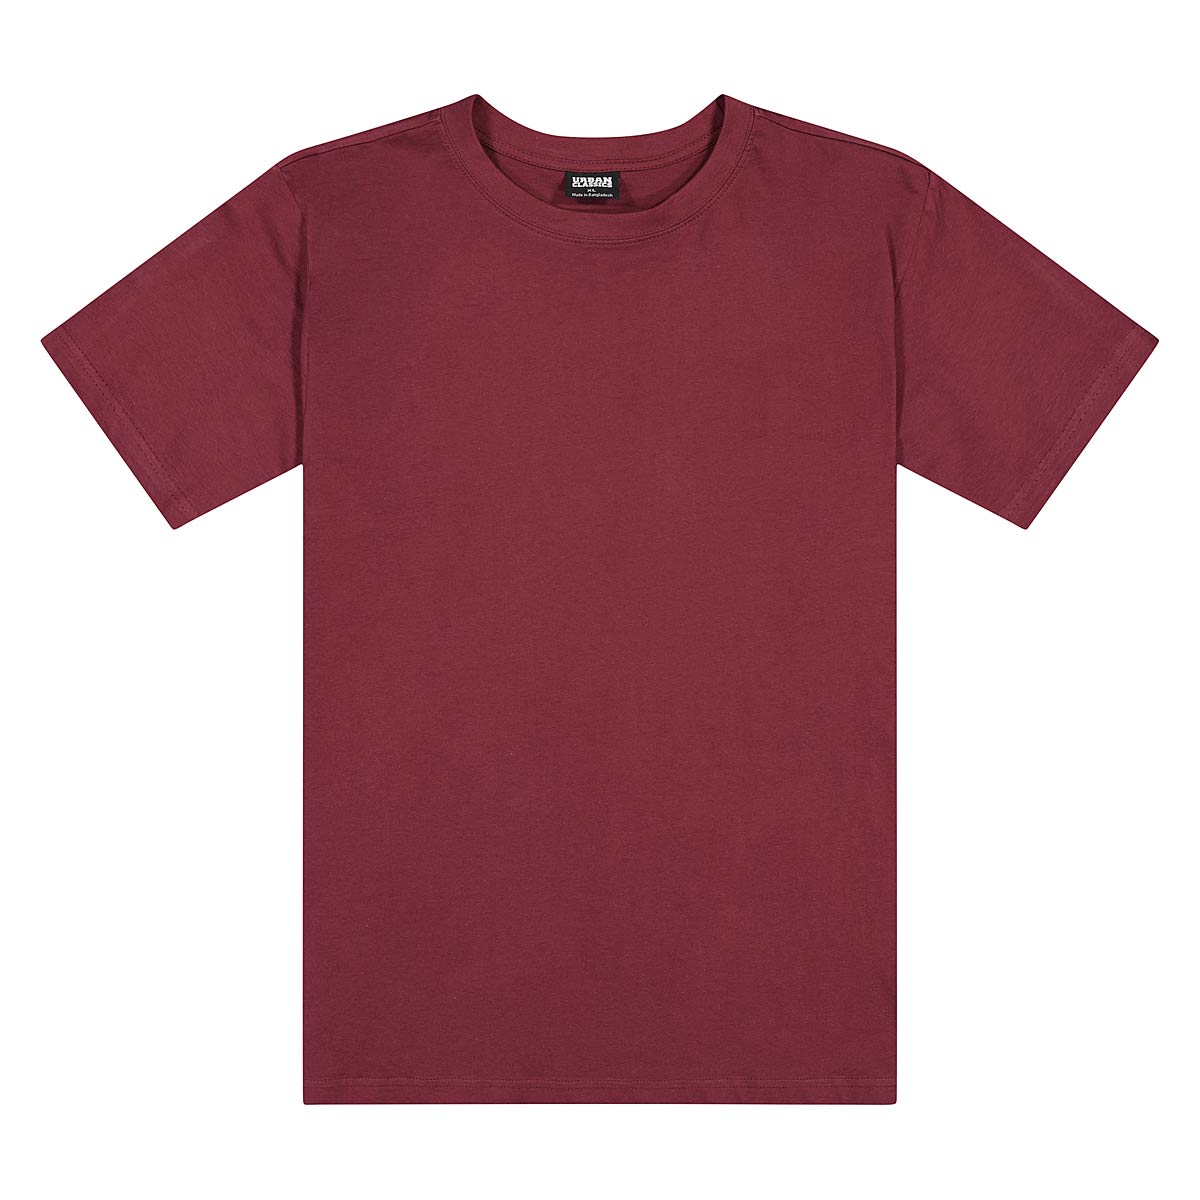 Urban Classics Tall T-Shirt, Cherry